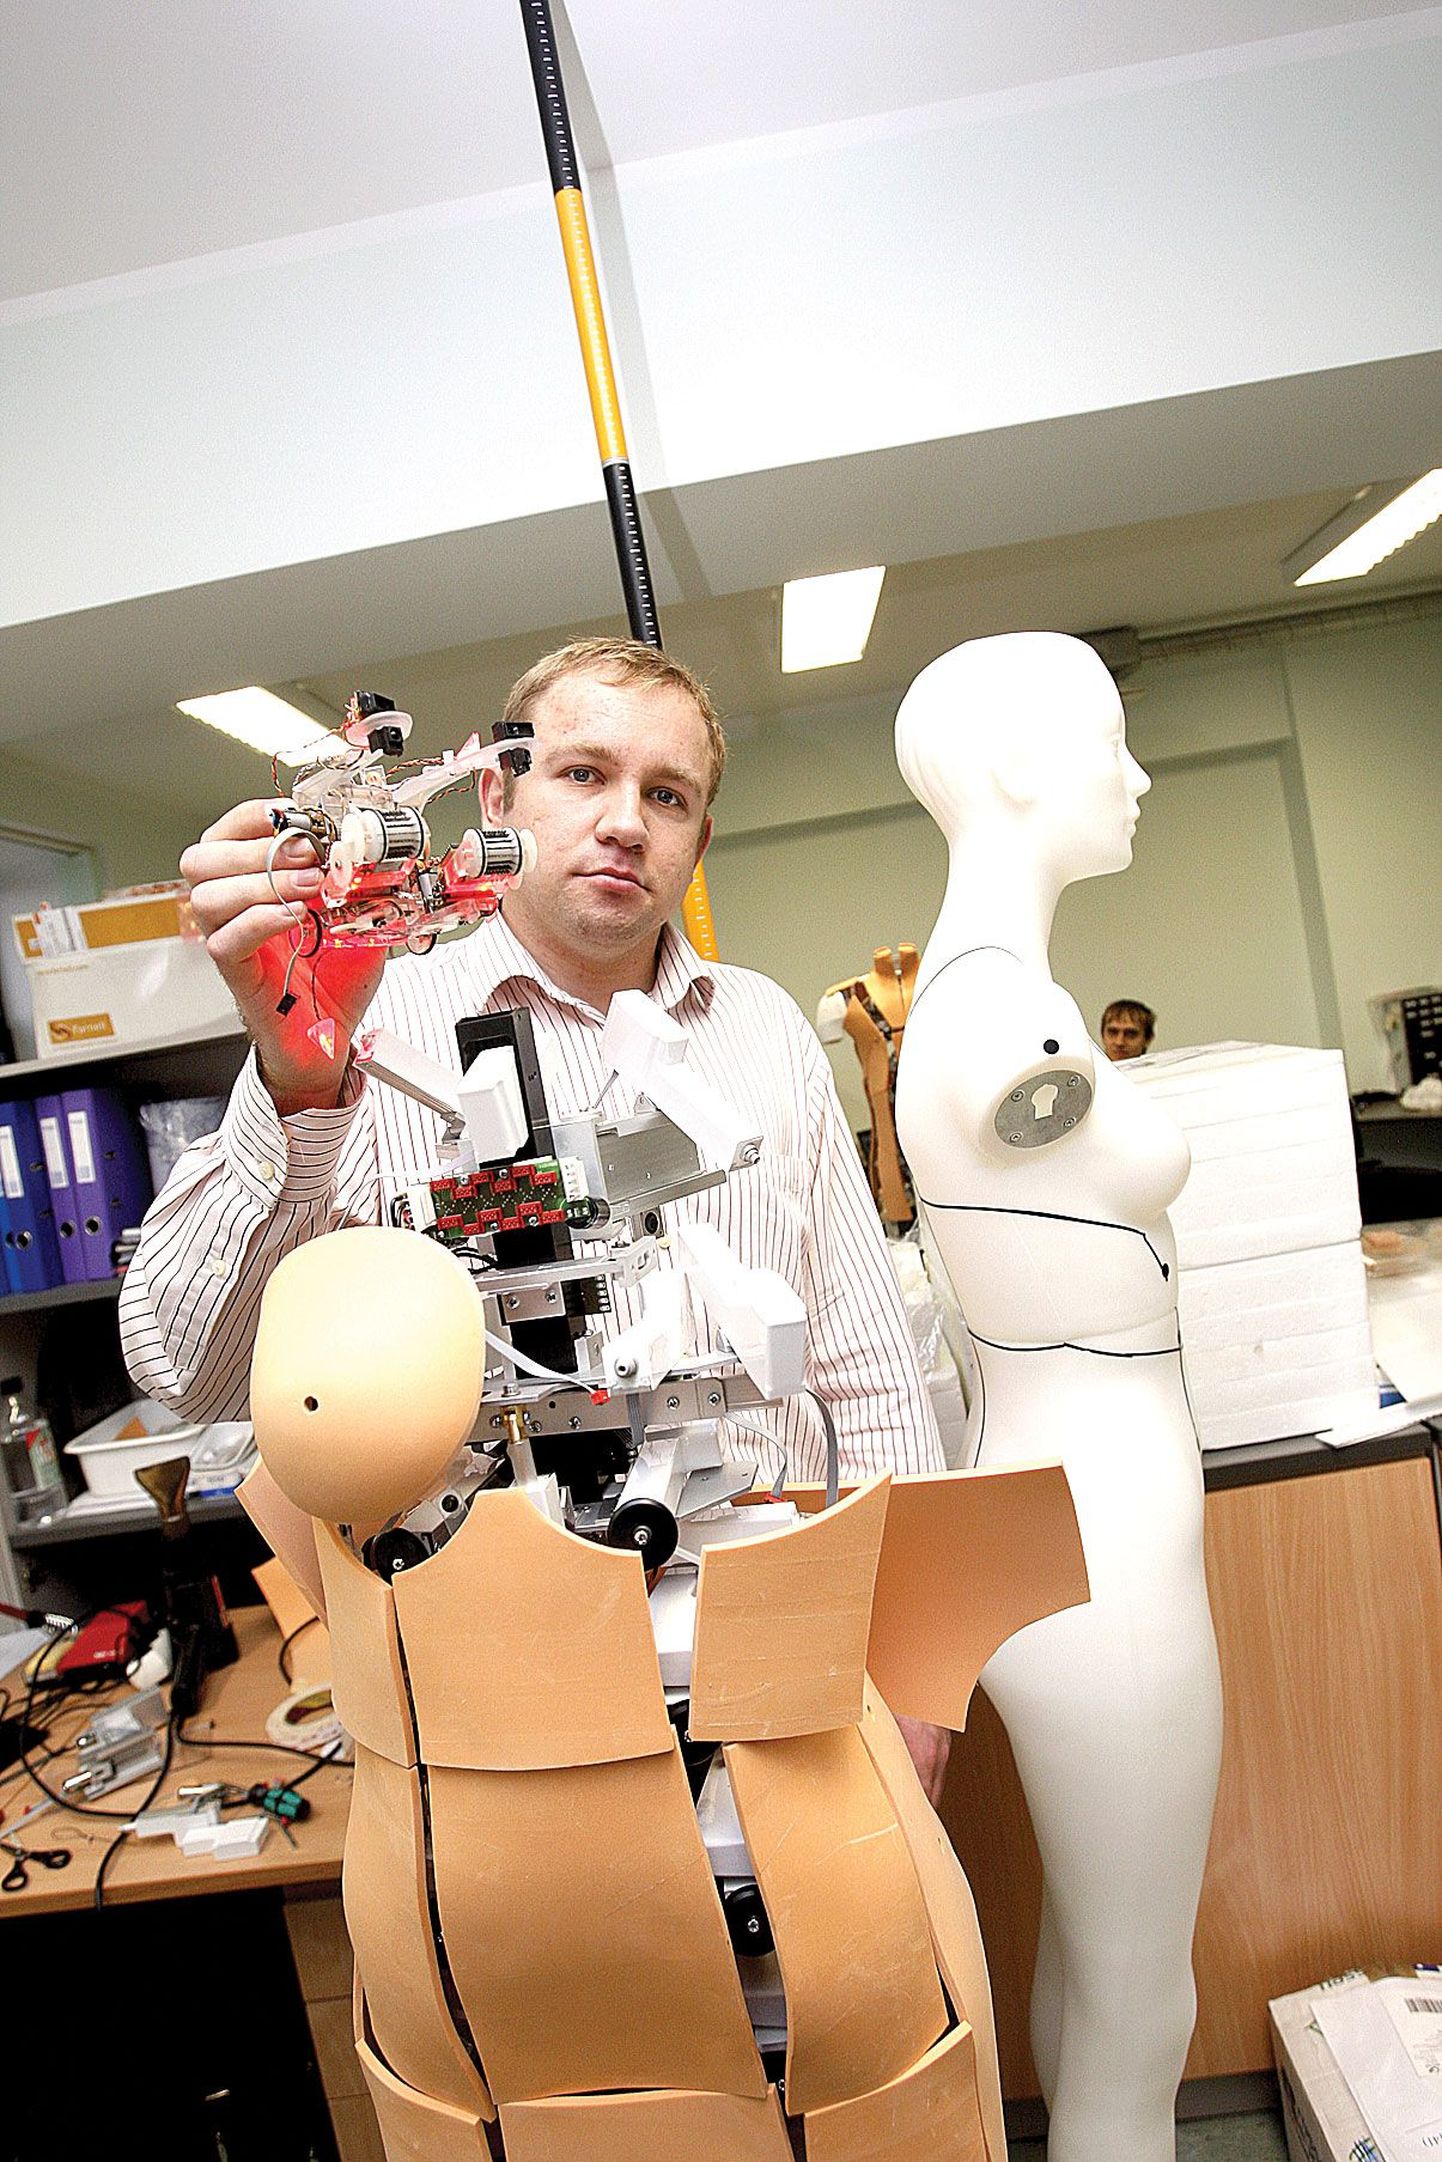 Tartu Ülikooli ettevõtlussuhete koordinaator Vahur Valdna hoiab tudengite ehitatud robotit, mis suudab köit pidi üles ronida. Tema ees seisvad robotmannekeenid on tema sõnul hea näide ettevõtluses kasutatavatest robotitest.